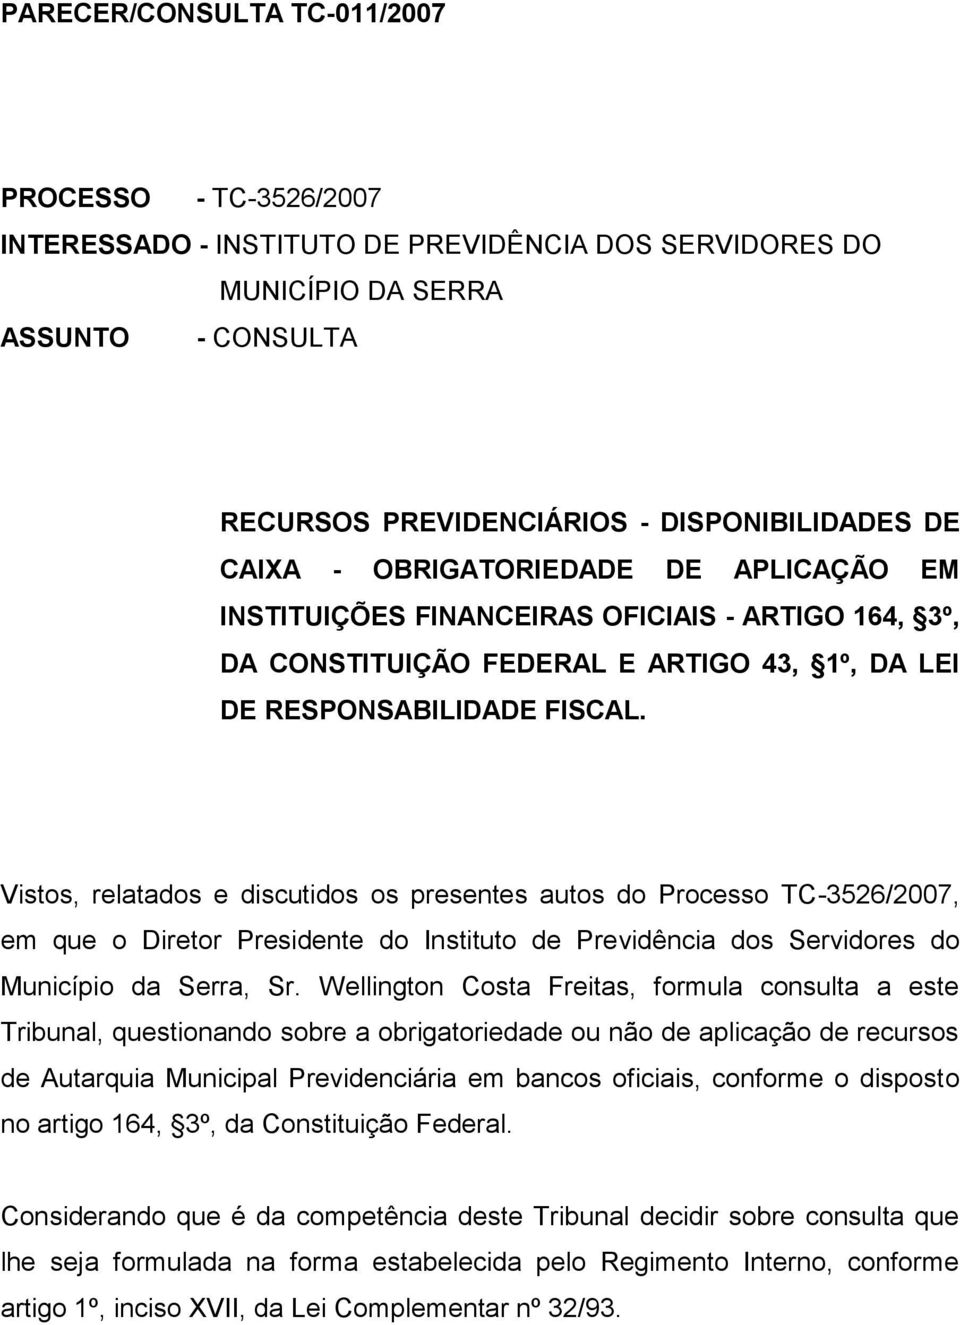 Vistos, relatados e discutidos os presentes autos do Processo TC-3526/2007, em que o Diretor Presidente do Instituto de Previdência dos Servidores do Município da Serra, Sr.